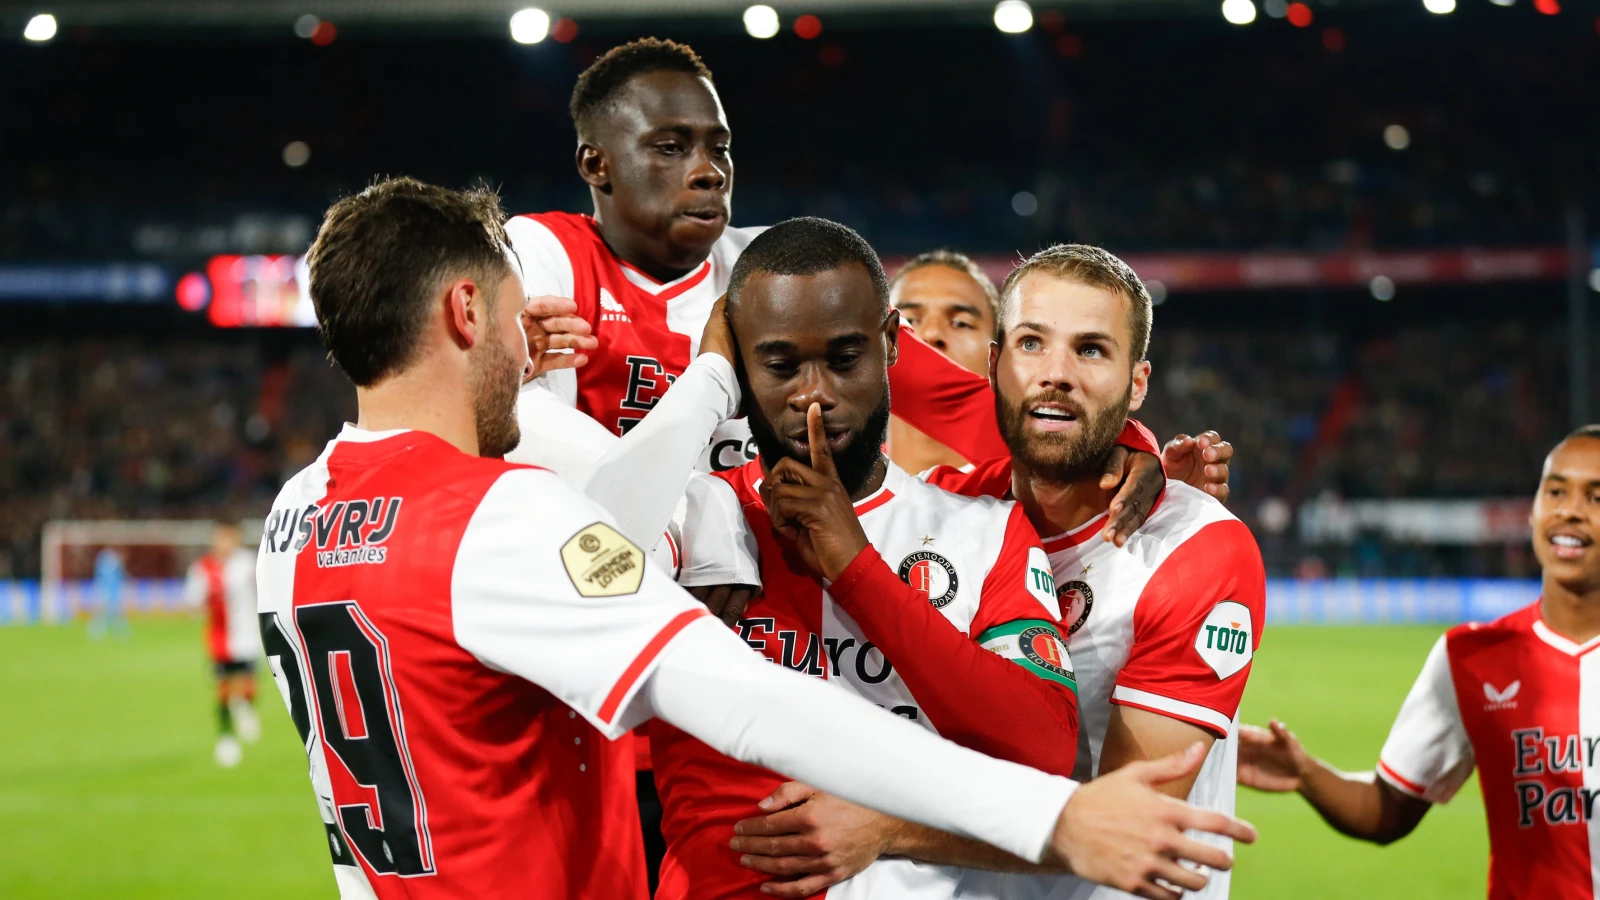 #PraatMee | Verwacht jij dat Feyenoord kampioen wordt dit jaar?